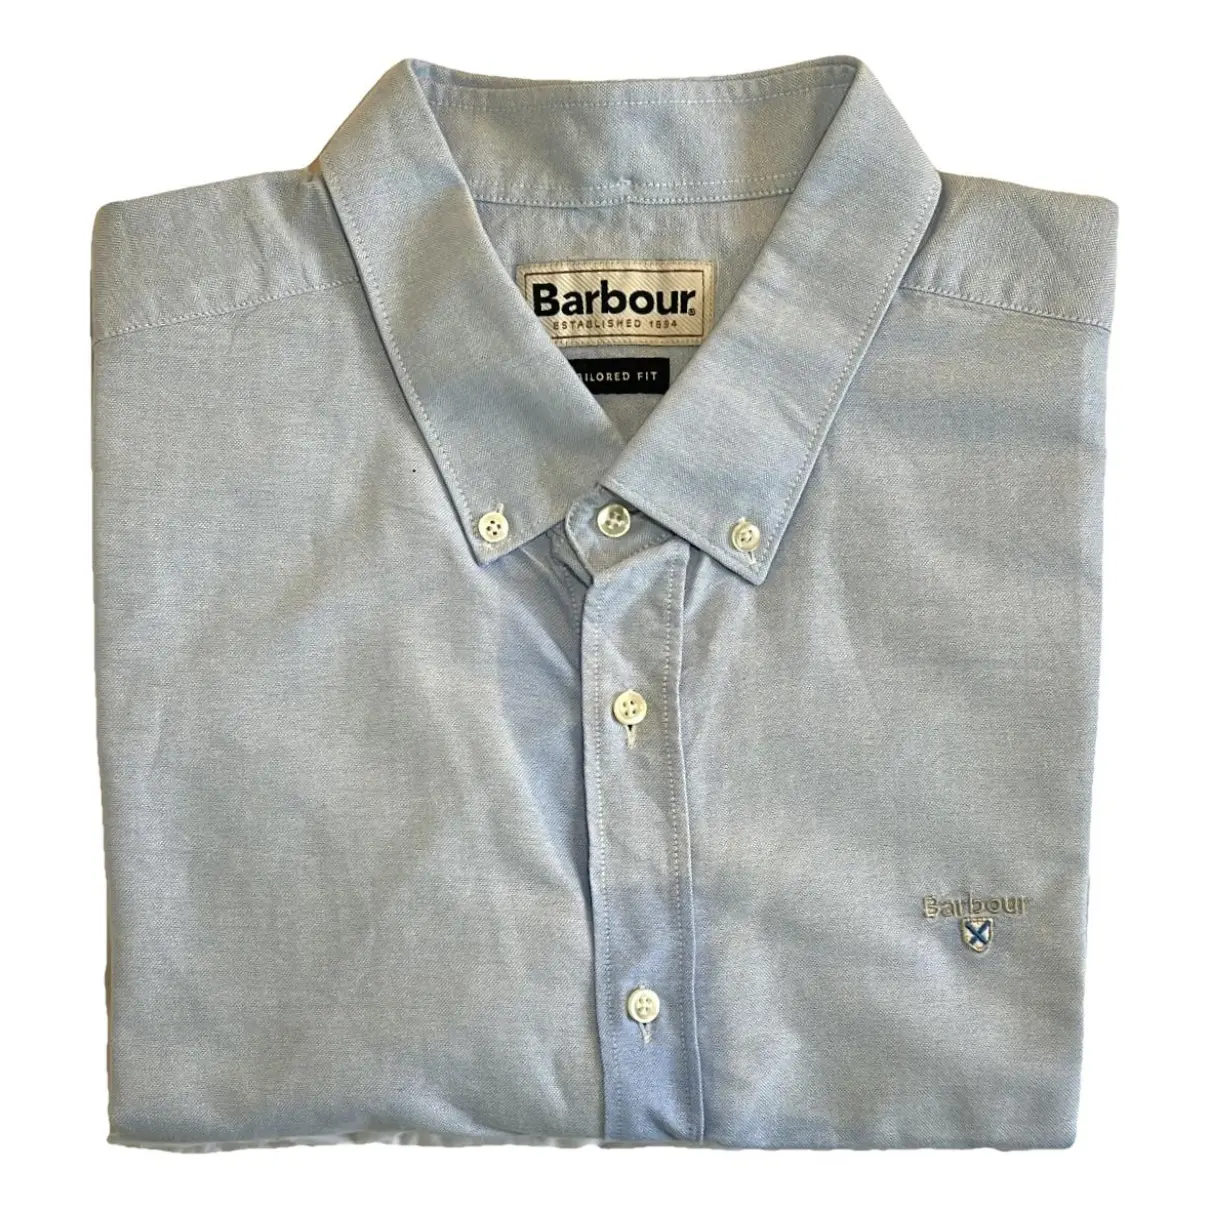 Buy Barbour Shirt online